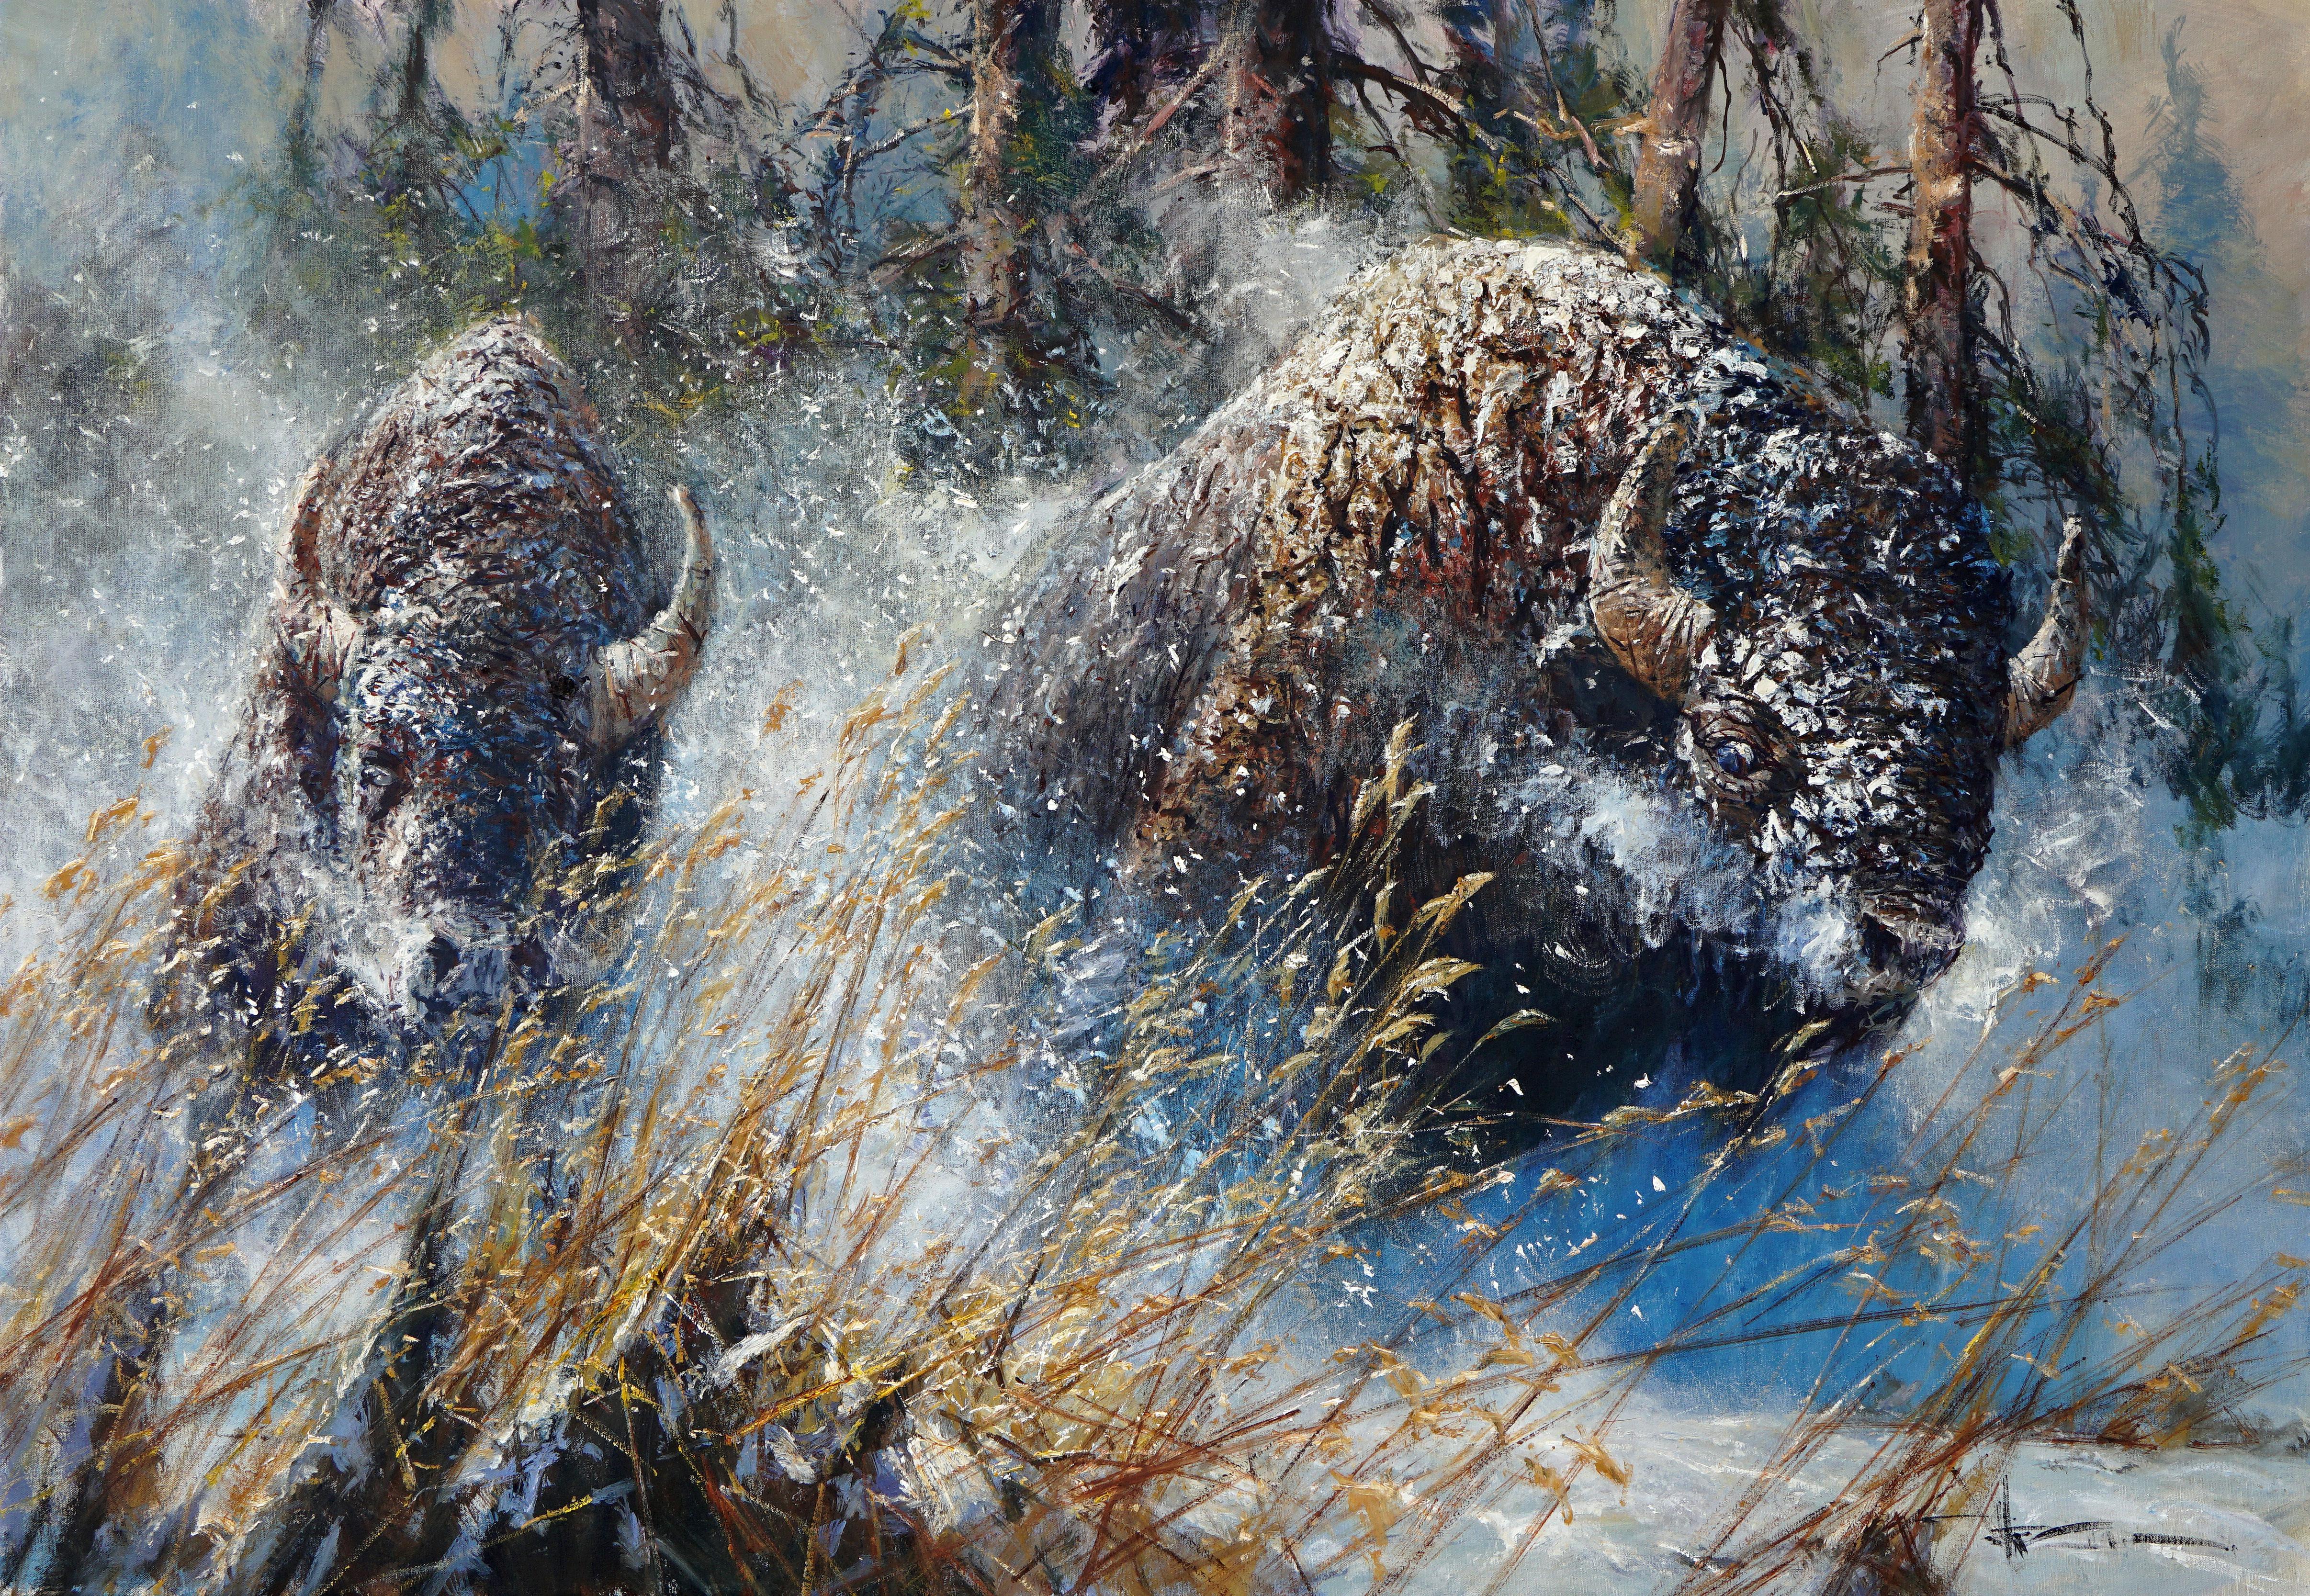 "Startled" de Robert Hagan est une huile originale sur toile et mesure 42x60.  Dans cette grande peinture originale de Robert Hagan,  Deux bisons d'Amérique bruns et poilus labourent les bancs de neige du célèbre parc national de Yellowstone.  Après